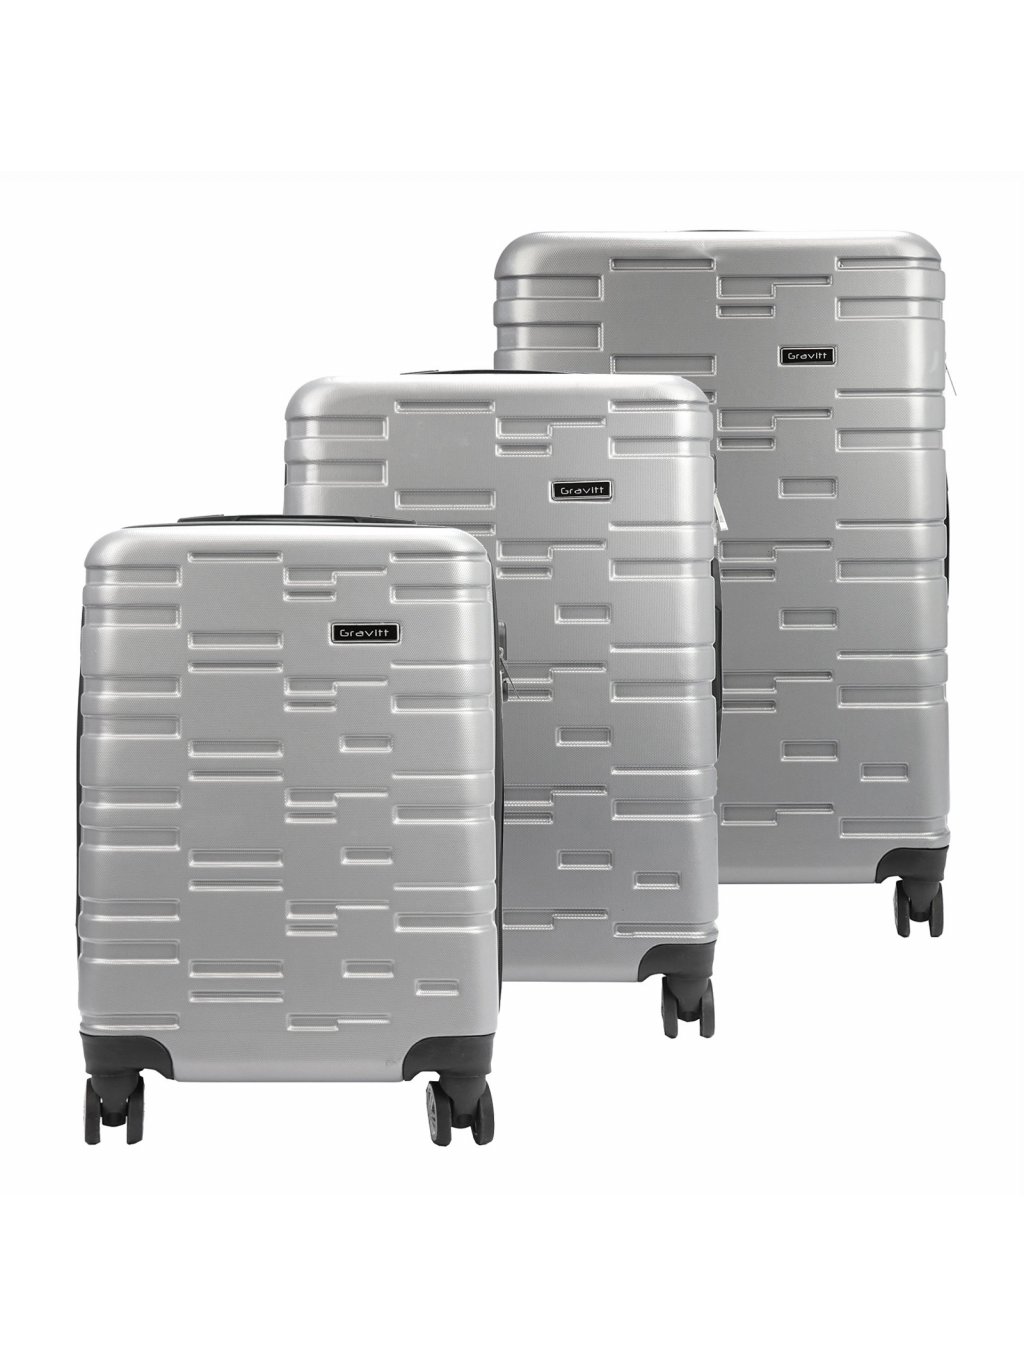 Sada cestovních kufrů Gravitt #1 x3 Z stříbrná